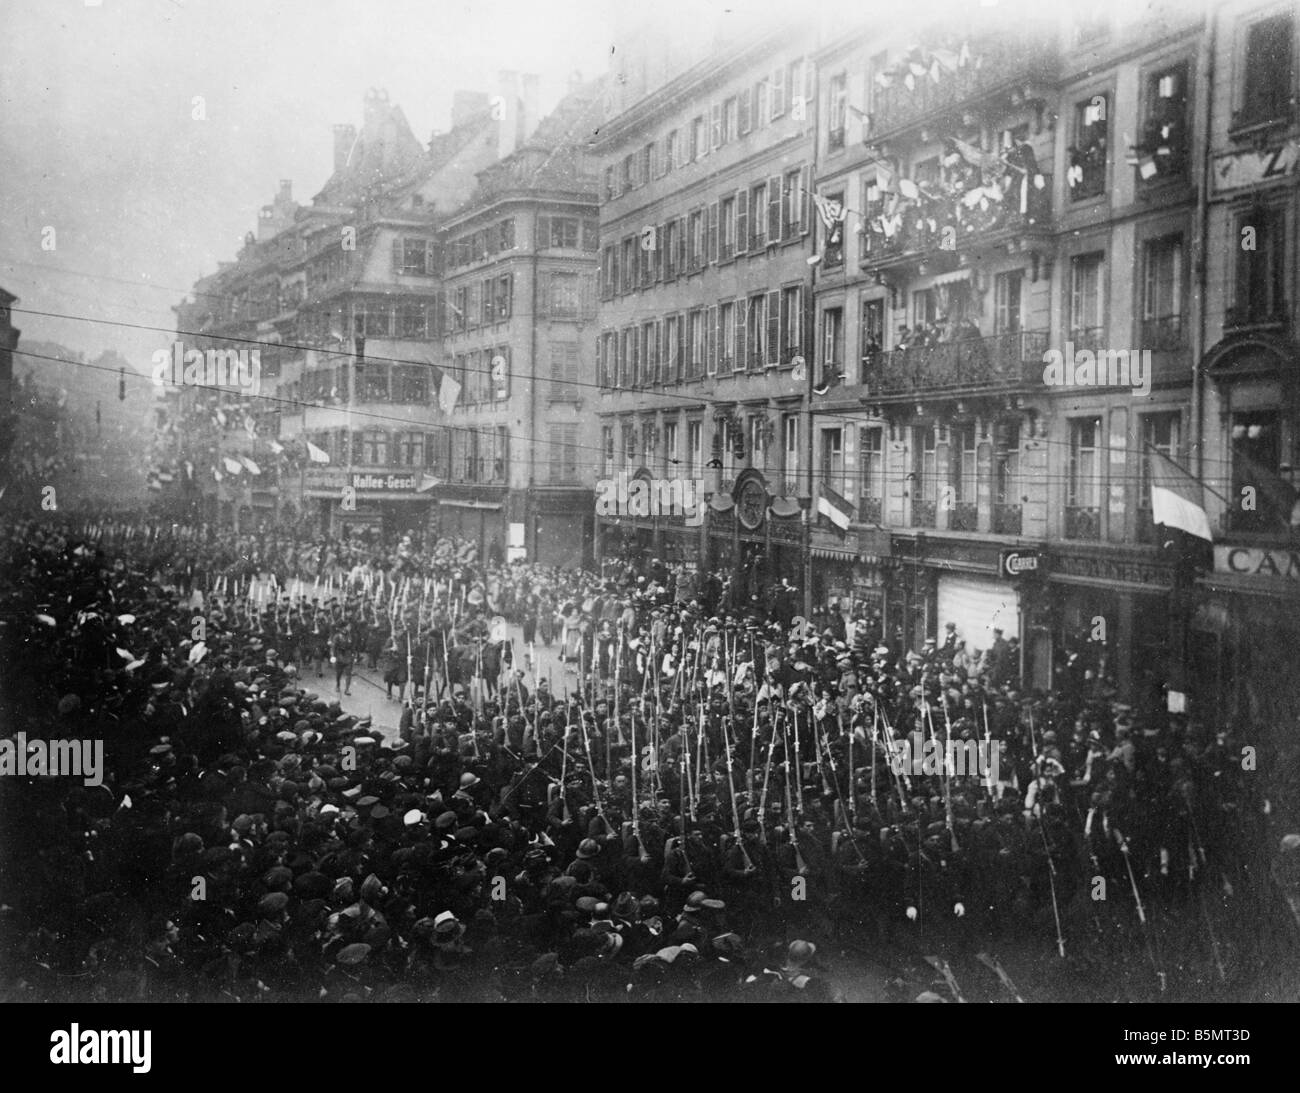 9FK 1918 11 22 A1 2 le truppe francesi a Strasburgo 1918 Photo World War I 1914 18 fine della guerra Strasburgo è occupata dal Fren Foto Stock